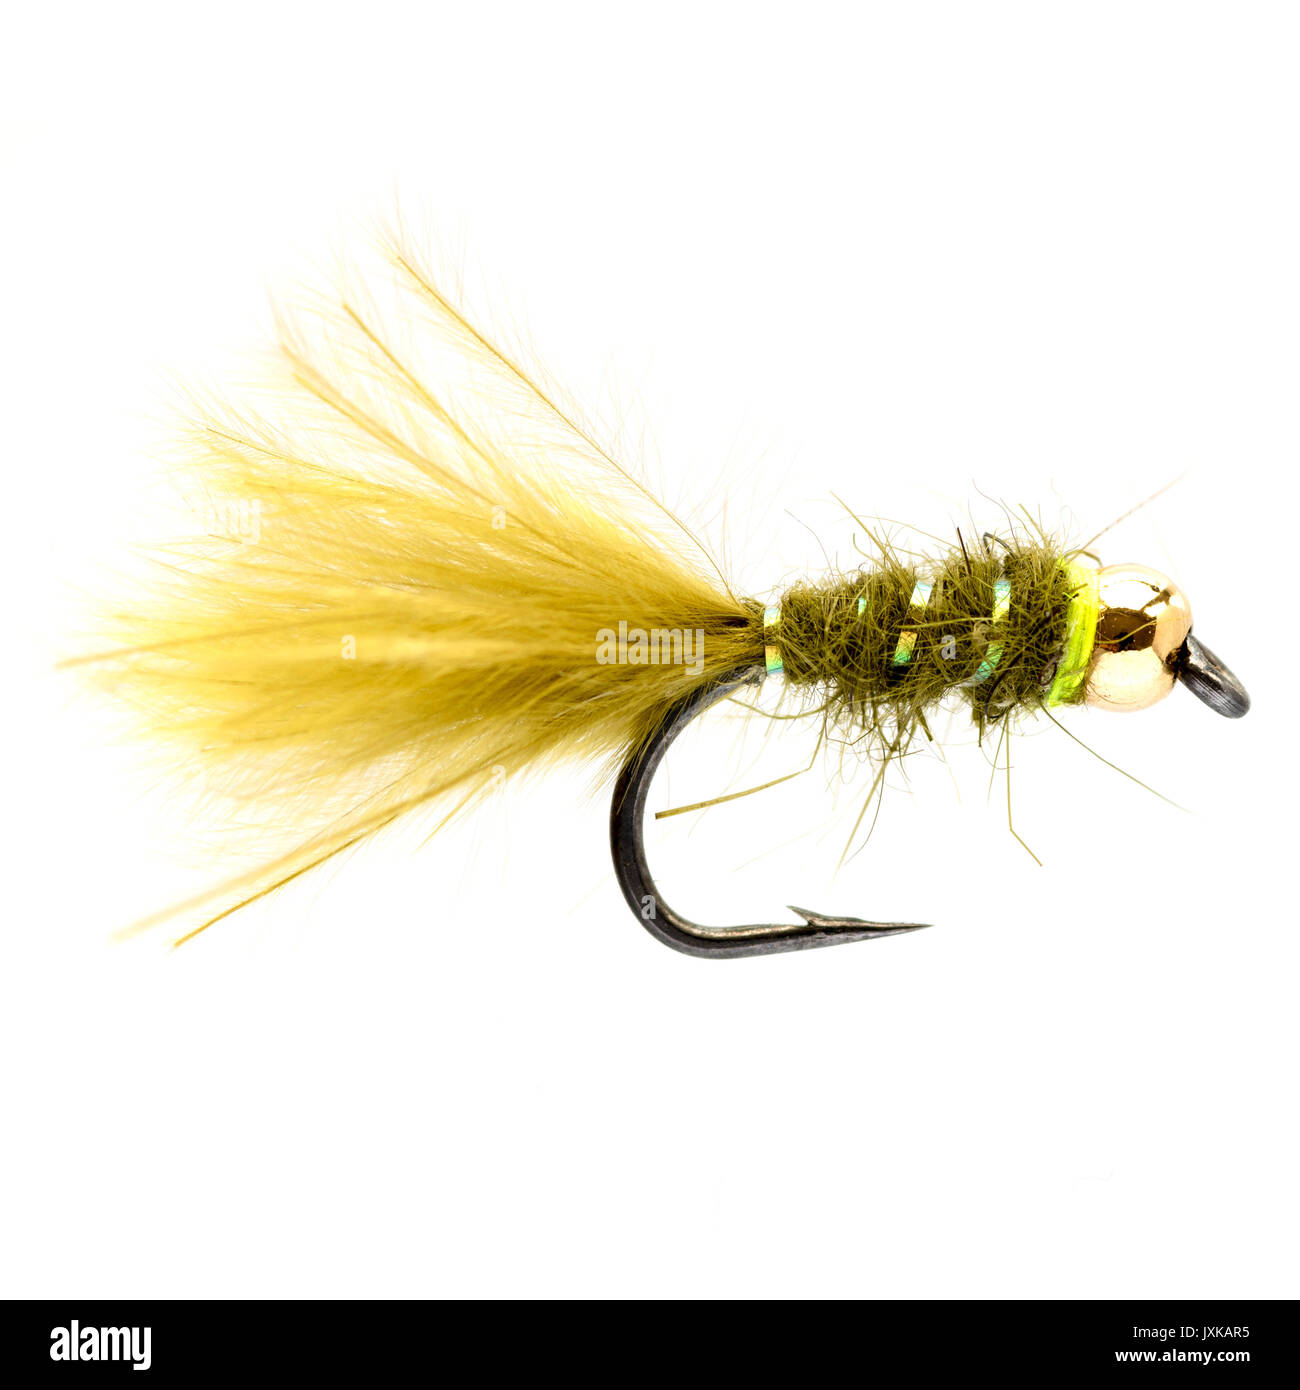 Gold fanciulla testa Fly - ben noto la trota arcobaleno fly o esca per la pesca con la mosca. Può essere utilizzato in laghi o fiumi. Questo volo imita una fanciulla naturale. Foto Stock